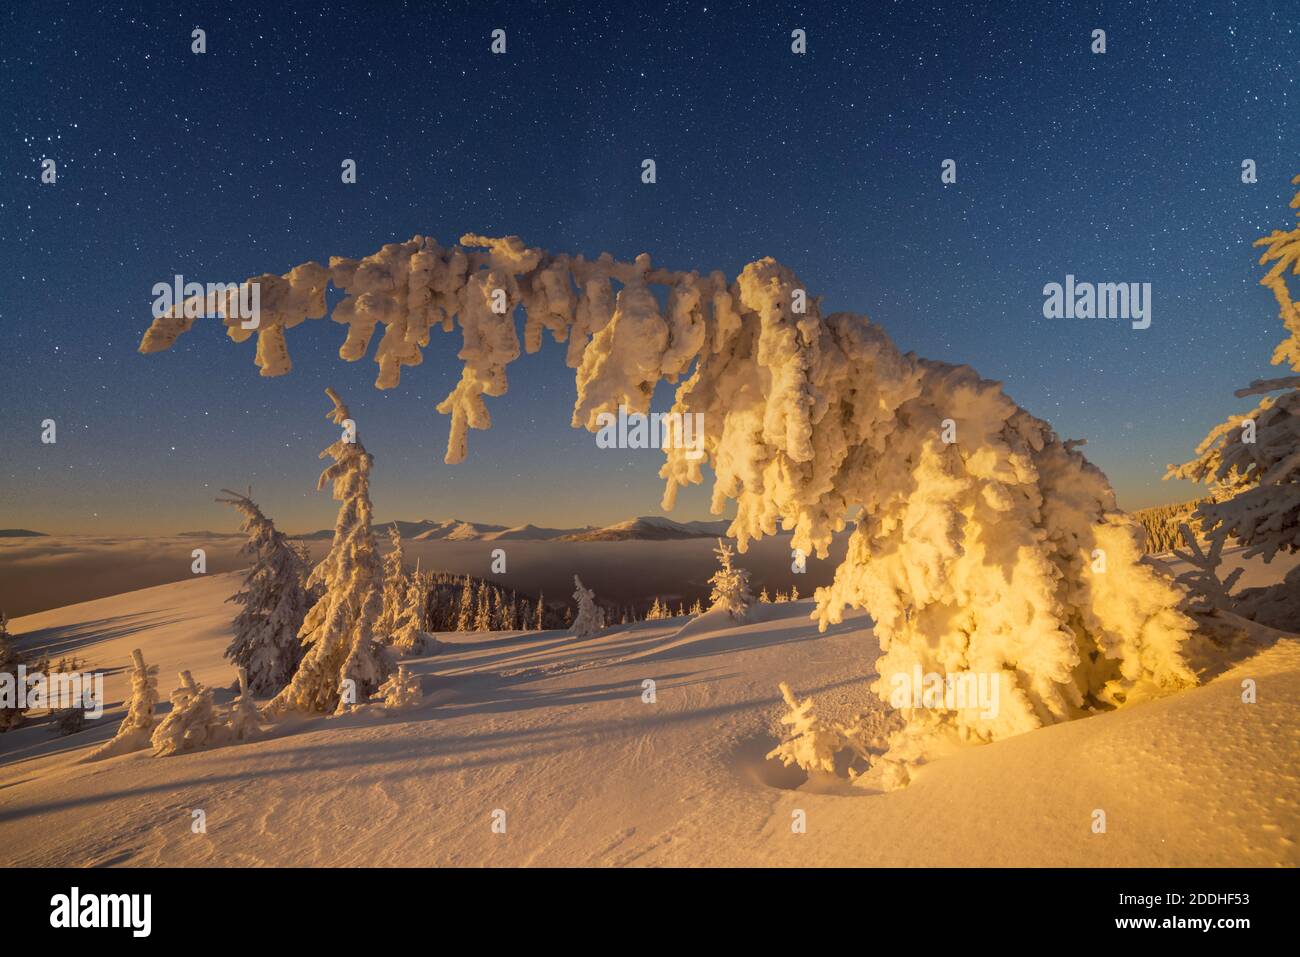 Fantastico paesaggio invernale incandescente da star light. Drammatica scena invernale con alberi innevati e la via lattea nel cielo notturno. Carpazi, l'Europa. Foto Stock